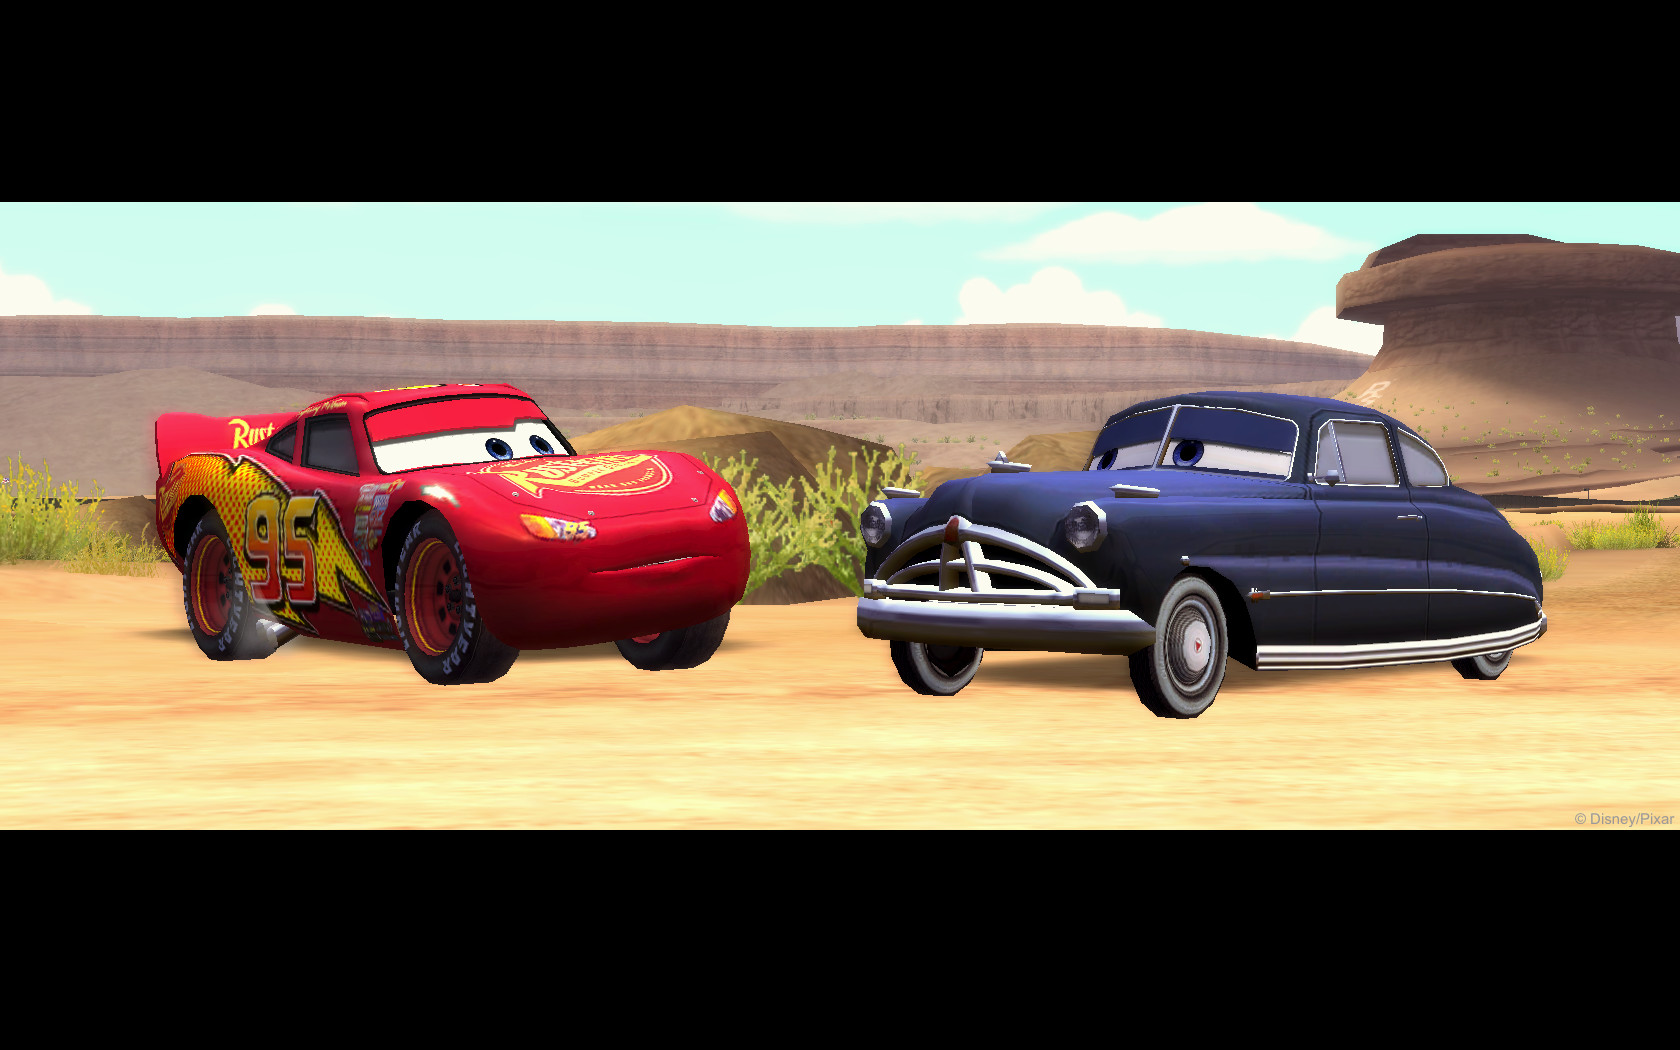 download disney pixar cars 2 game